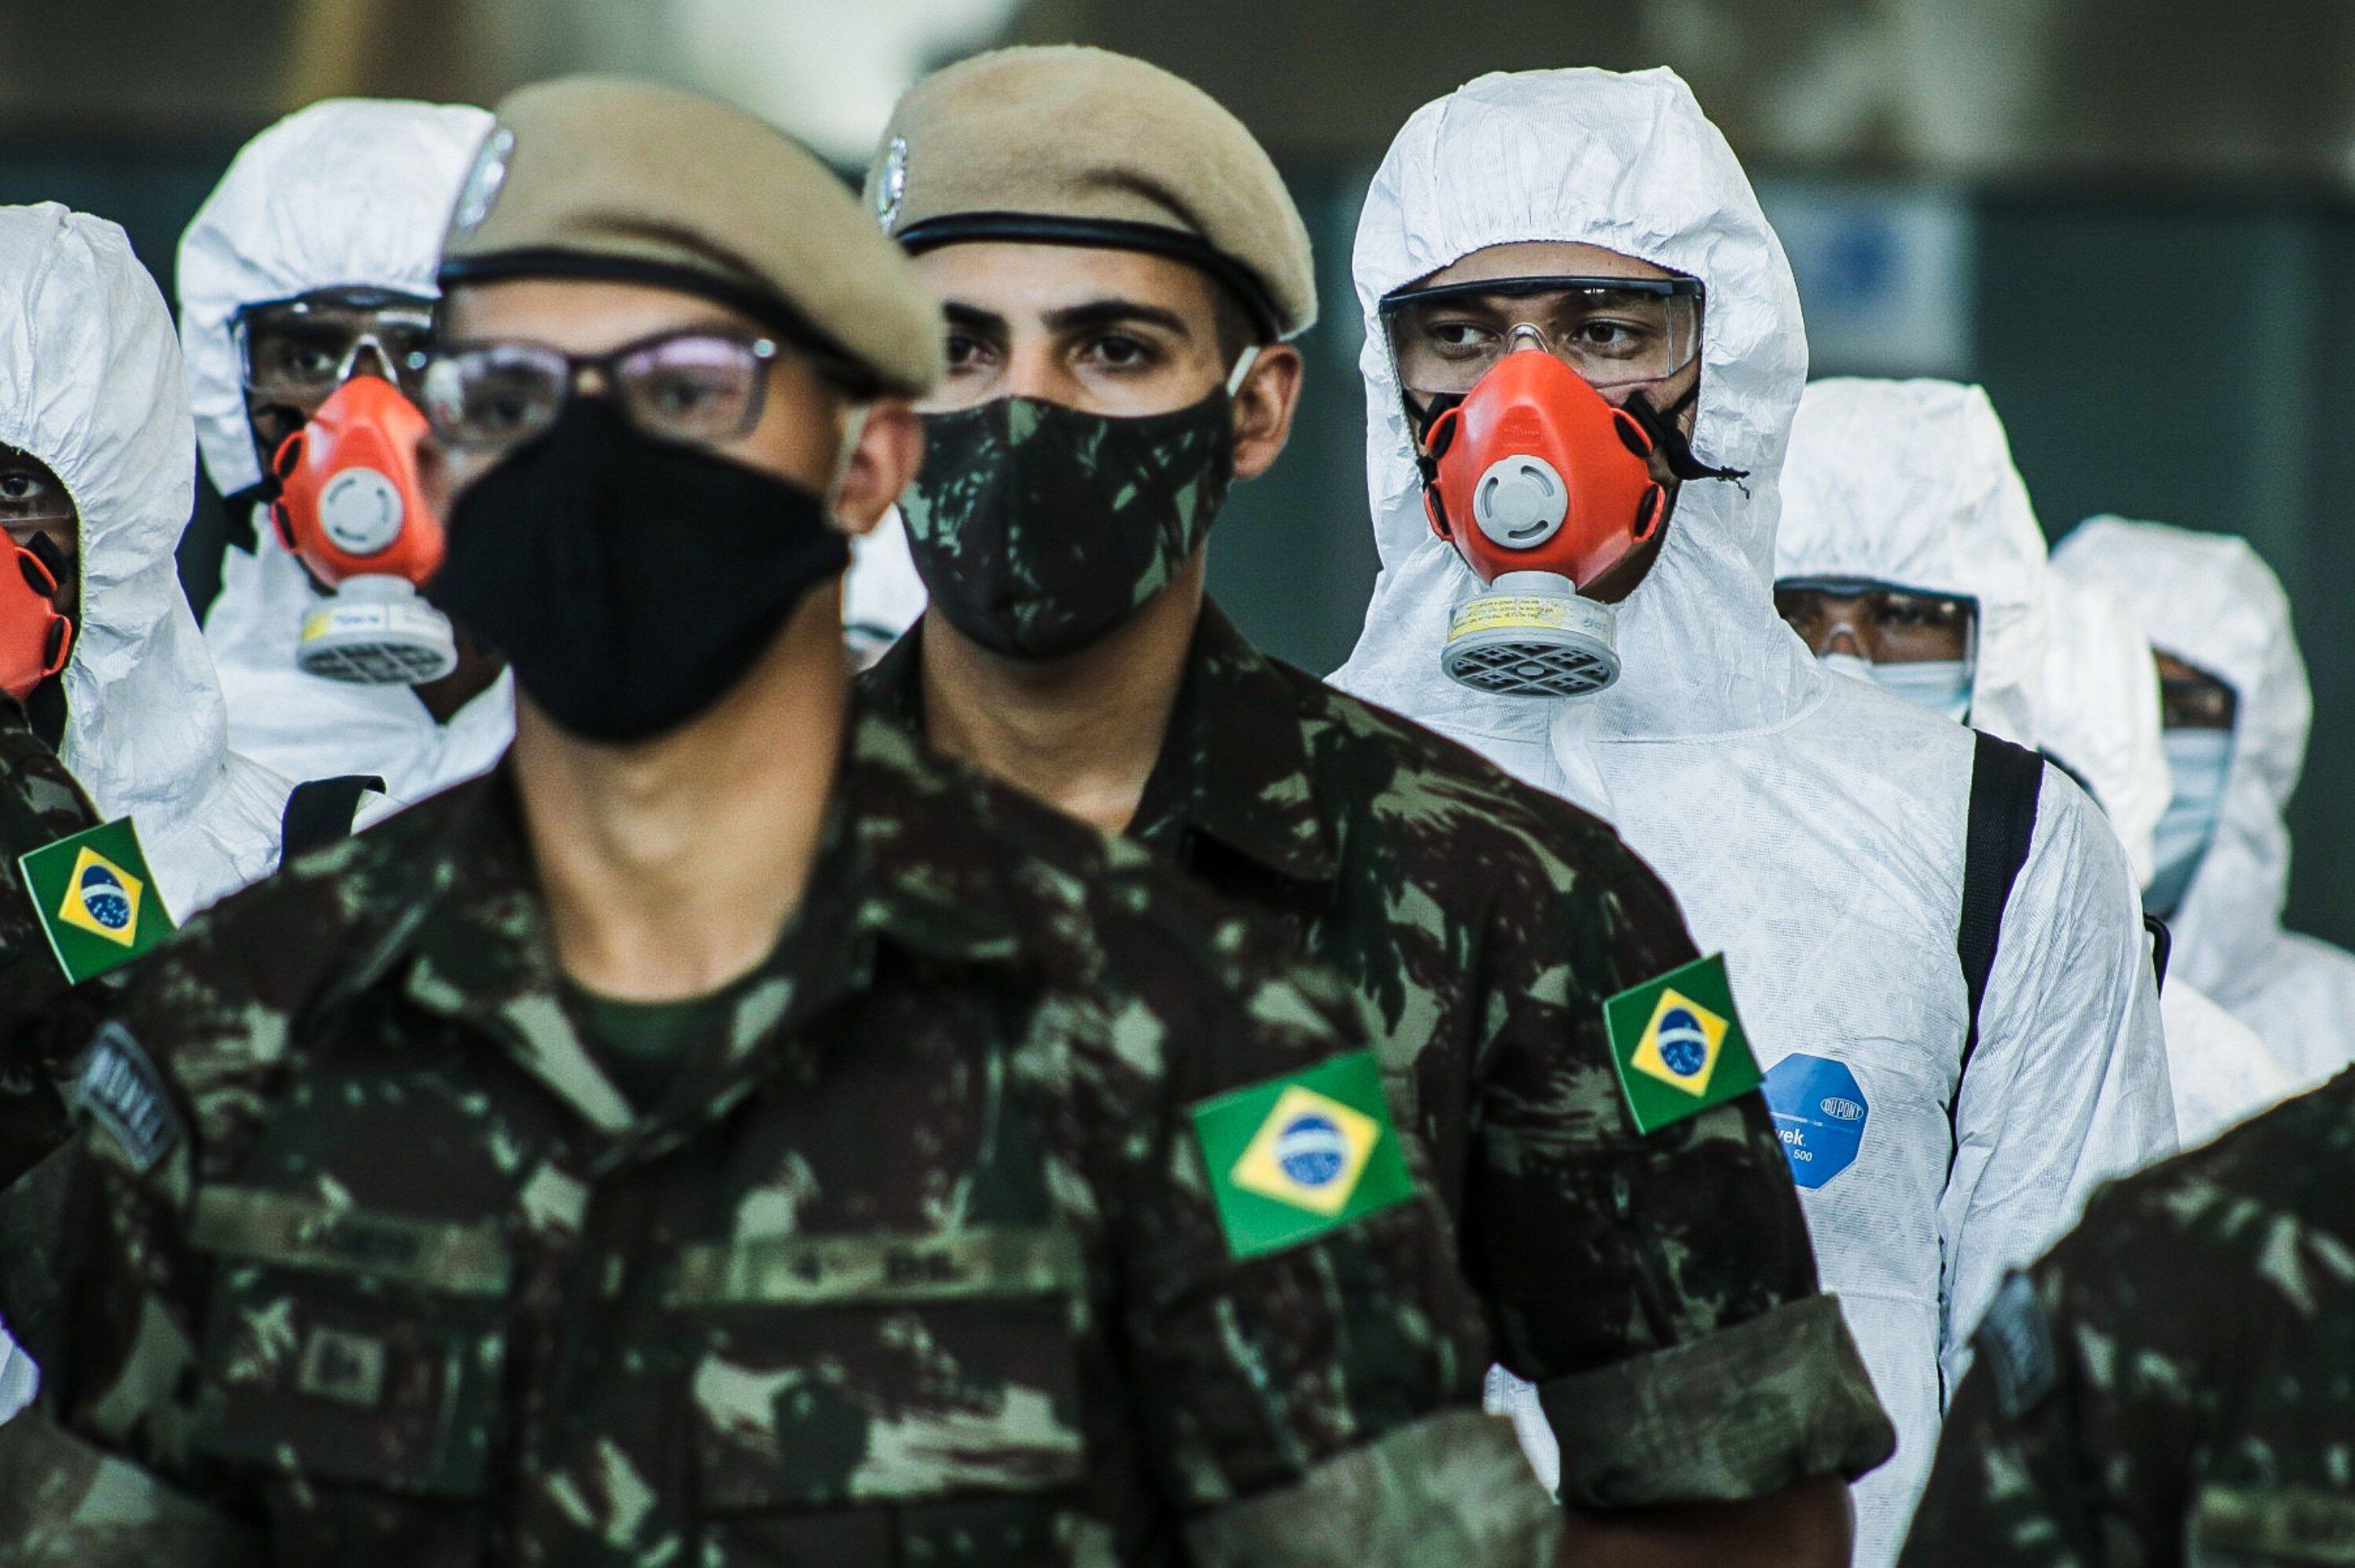 25/09/2020 Un grupo de soldados del Ejército de Brasil durante las labores de desinfección del Aeropuerto Internacional de Sao Paulo.
POLITICA SUDAMÉRICA BRASIL LATINOAMÉRICA INTERNACIONAL
FEPESIL / ZUMA PRESS / CONTACTOPHOTO
